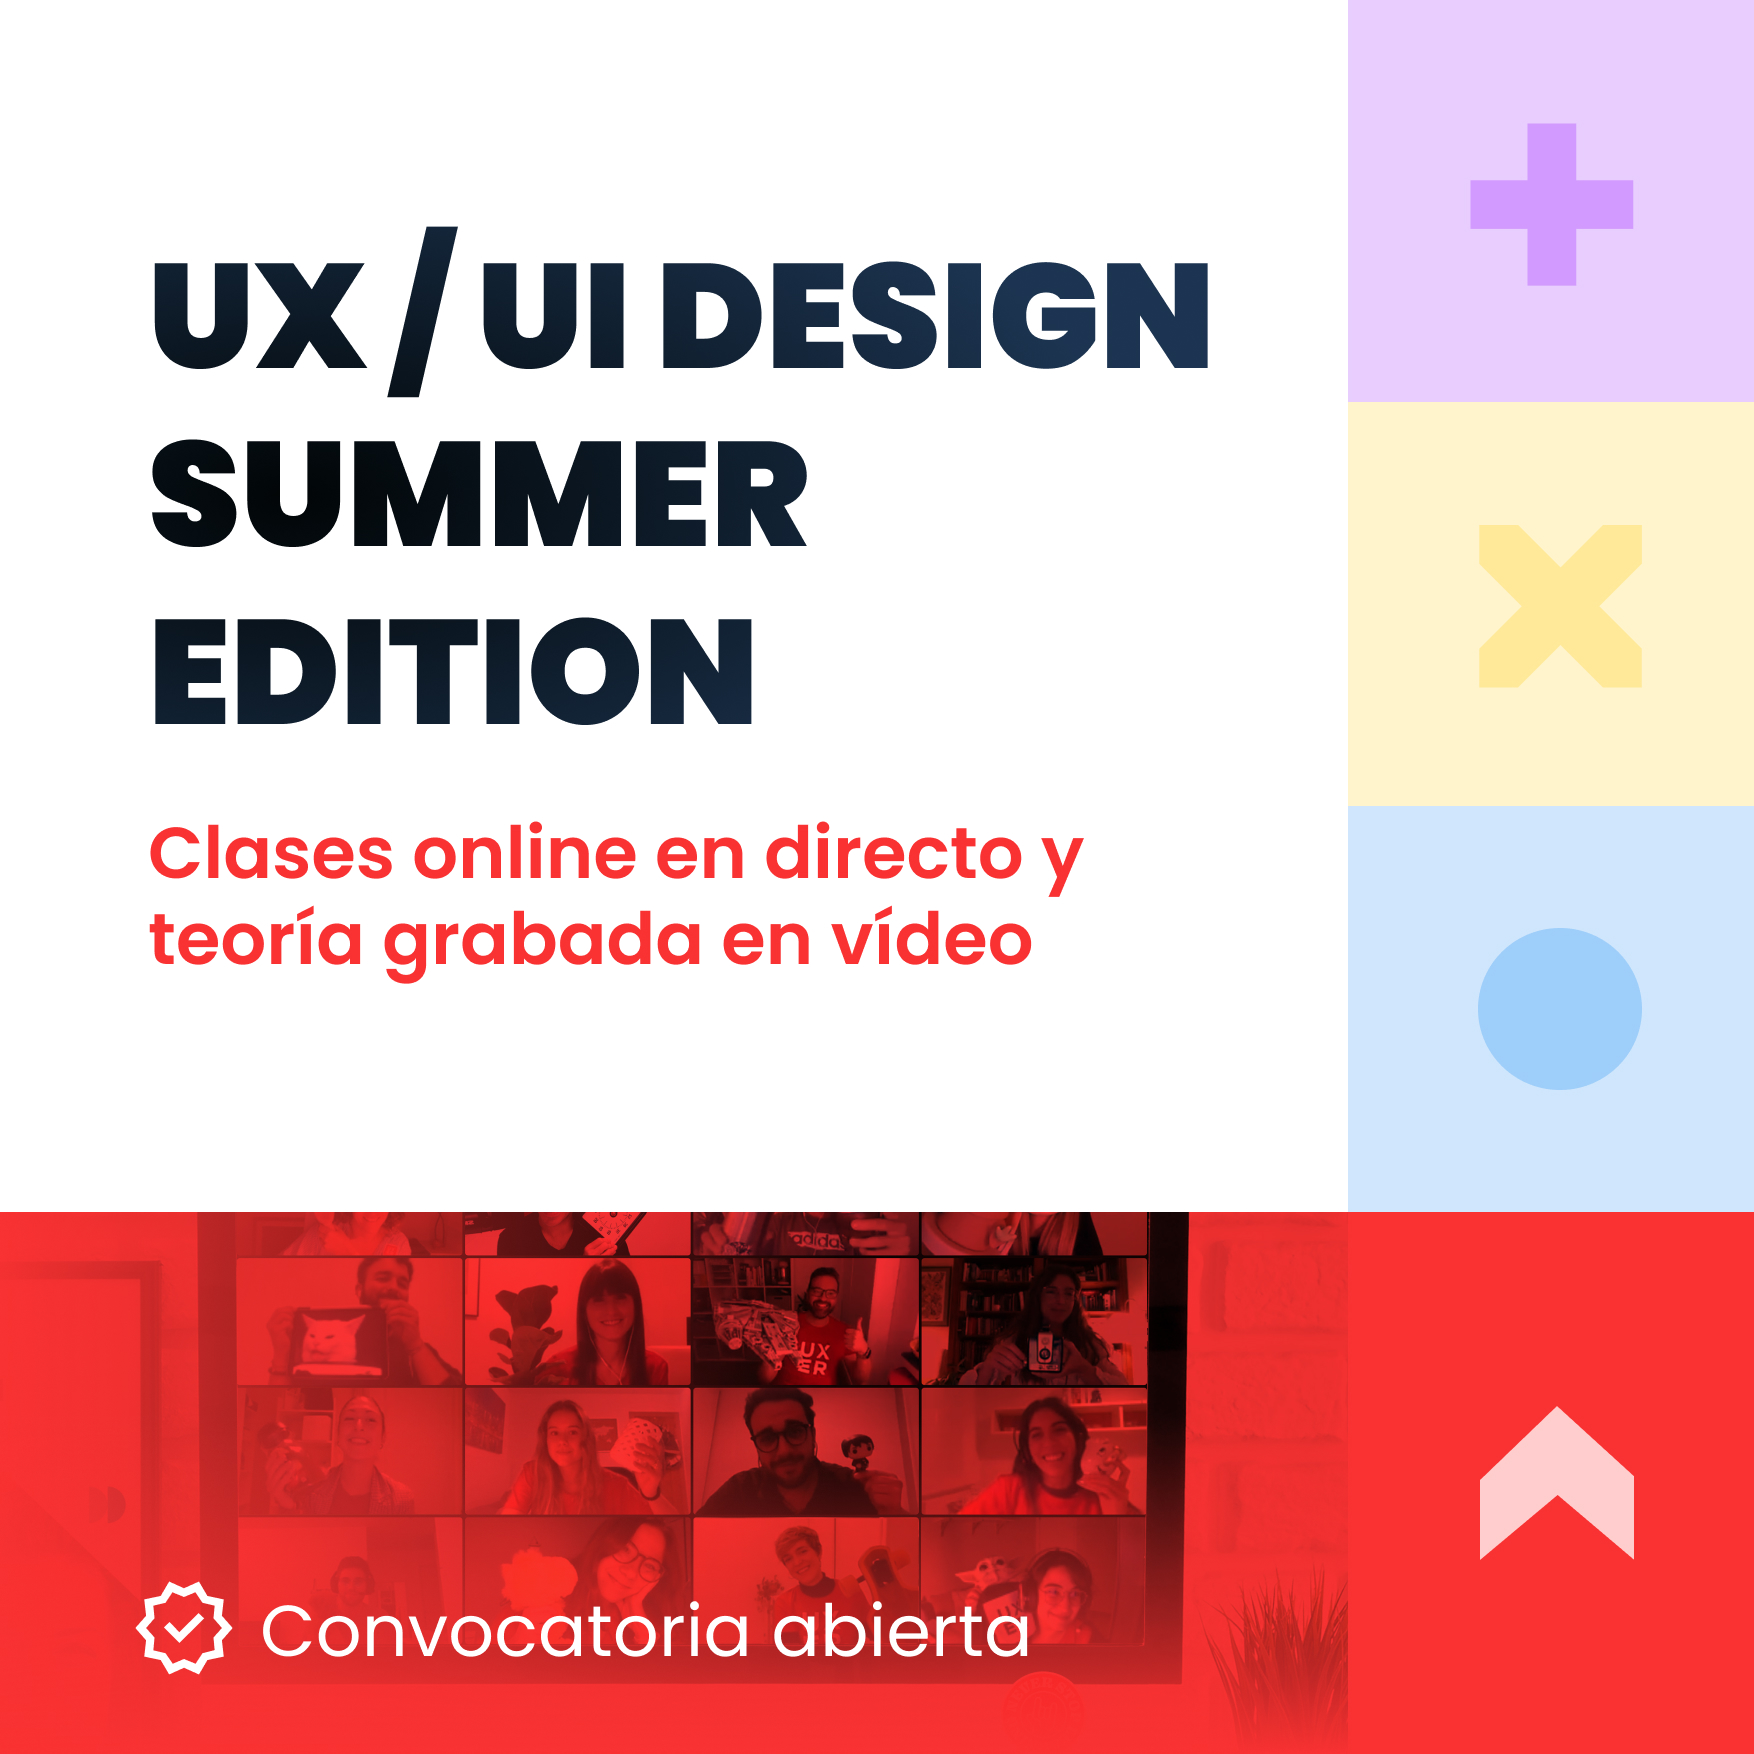 Apúntate al curso UX/UI Design Summer Edition